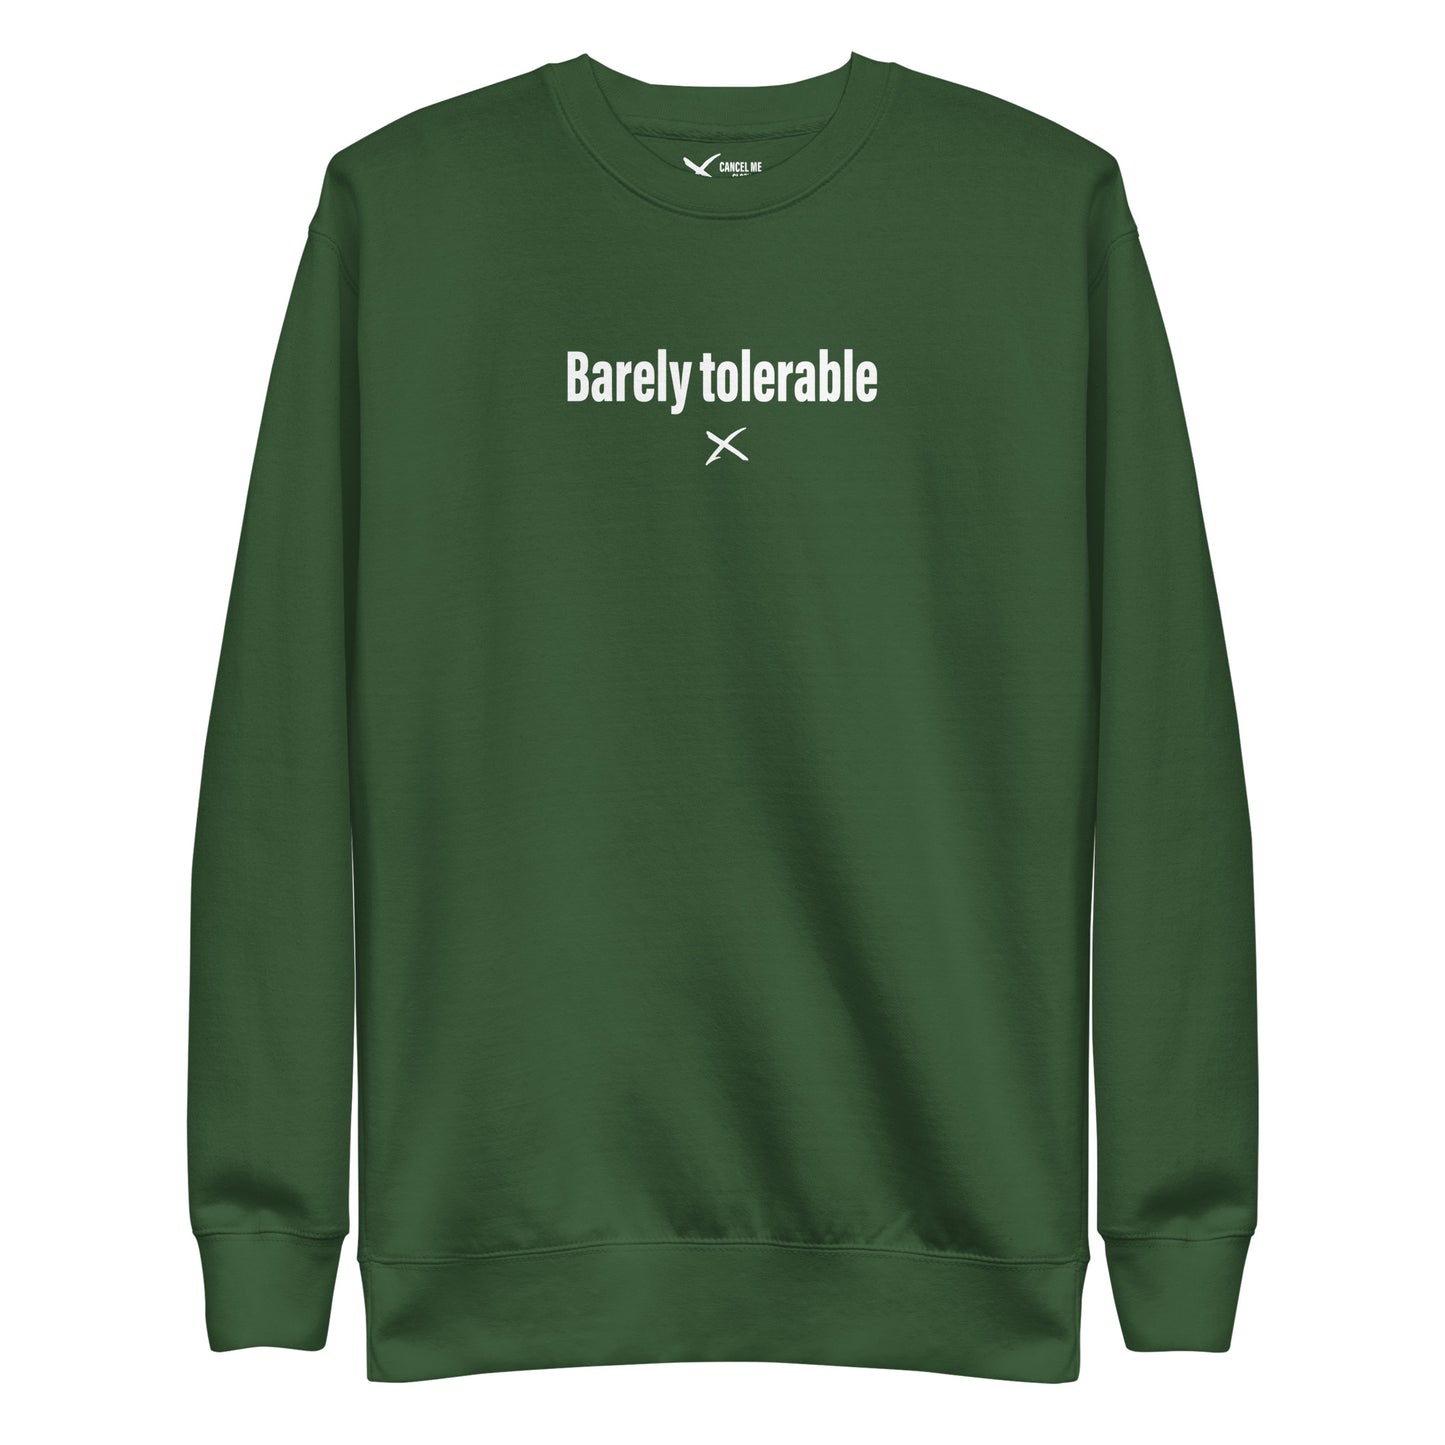 Barely tolerable - Sweatshirt